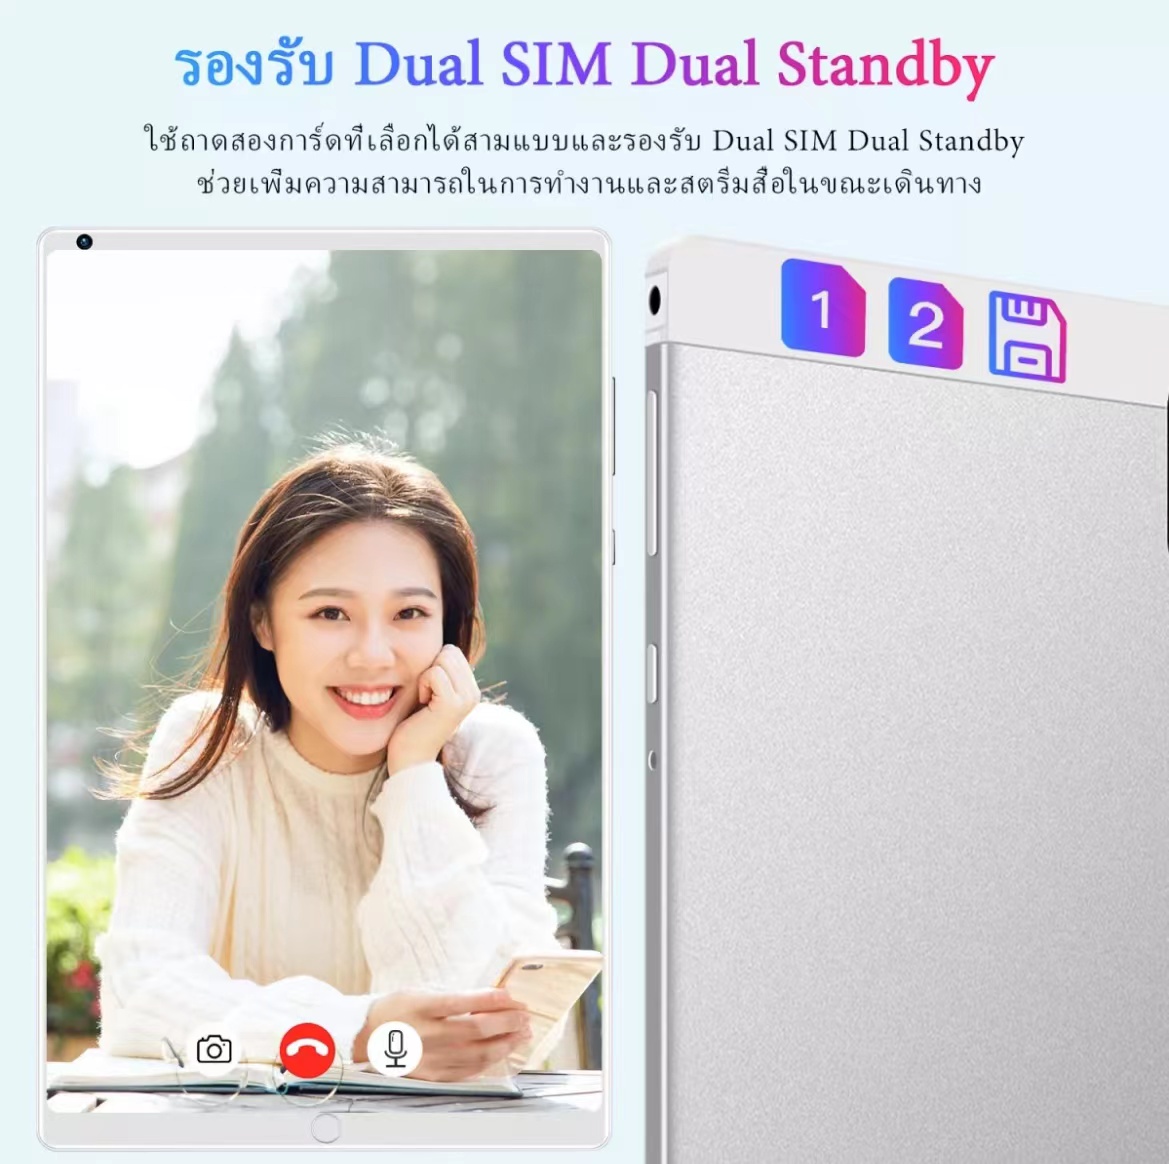 เกี่ยวกับสินค้า ซื้อ 1 แถม 1 แท็บเล็ต Sg Galaxy Tab A7 LTE 10.4 นิ้ว Tablet Phantoms ไอเเพ็ด แท็บเล็ตถูกๆ RAM 16GB ROM 512GB โทรได้ Full HD แท็บเล็ตราคาถูก Andorid 11.0จัดส่งฟรี รองรับภาษาไทย หน่วยประมวลผล 10-core แท็บเล็ตโทรได้ 4g/5G แท็บเล็ตสำหรับเล่นเกมราคาถูก